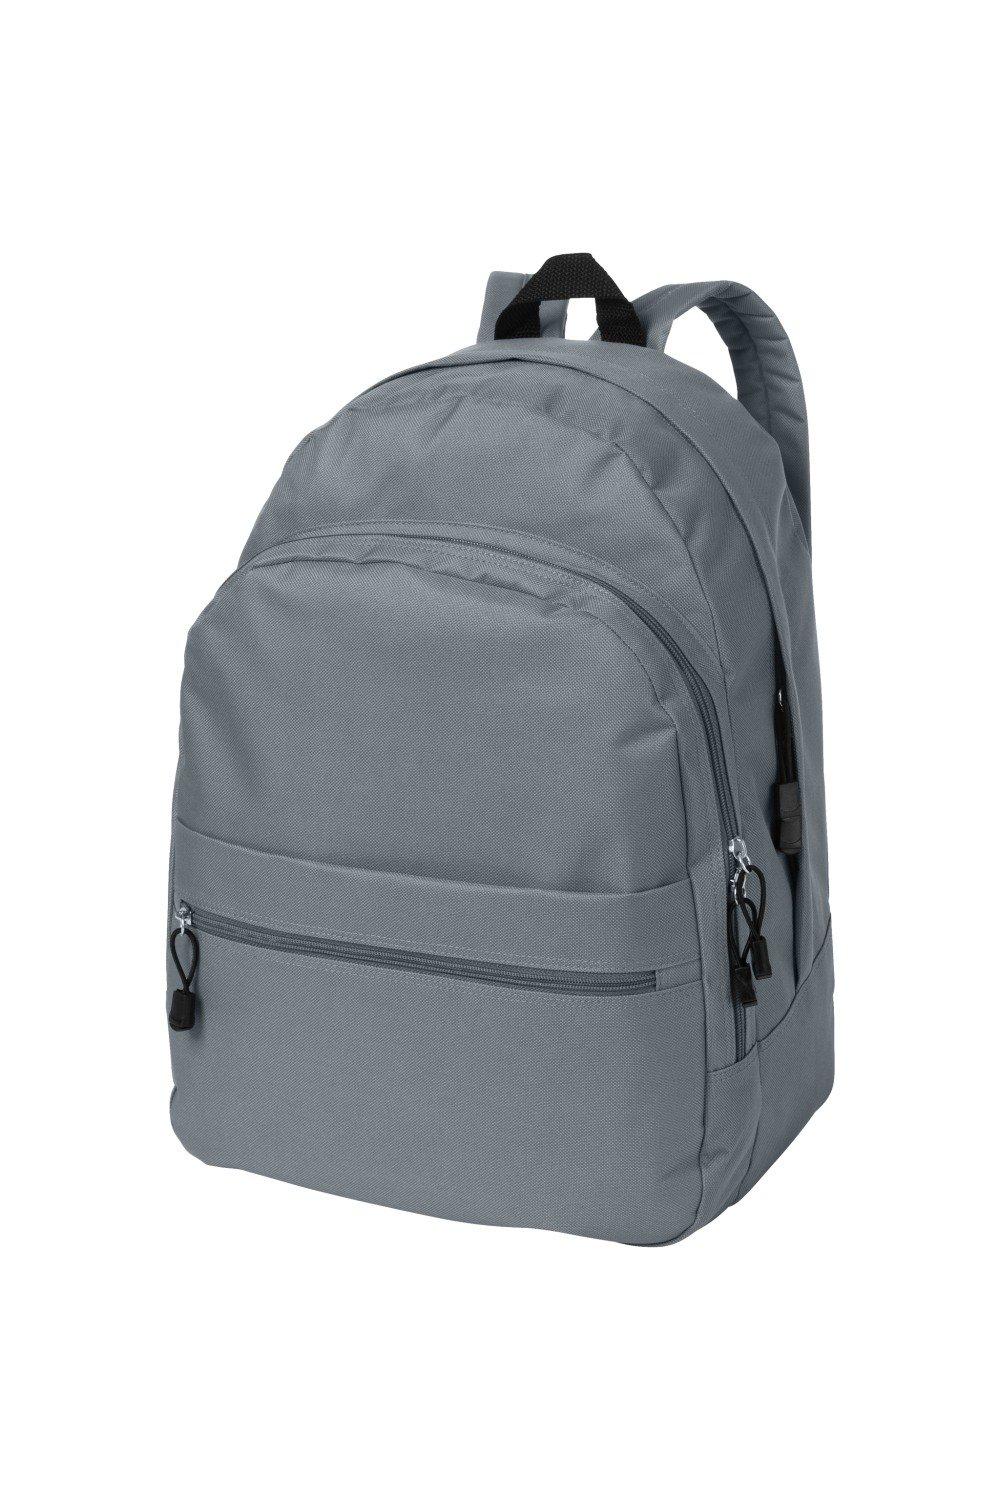 Трендовый рюкзак Bullet, серый рюкзак с карманом единорог 1 шт